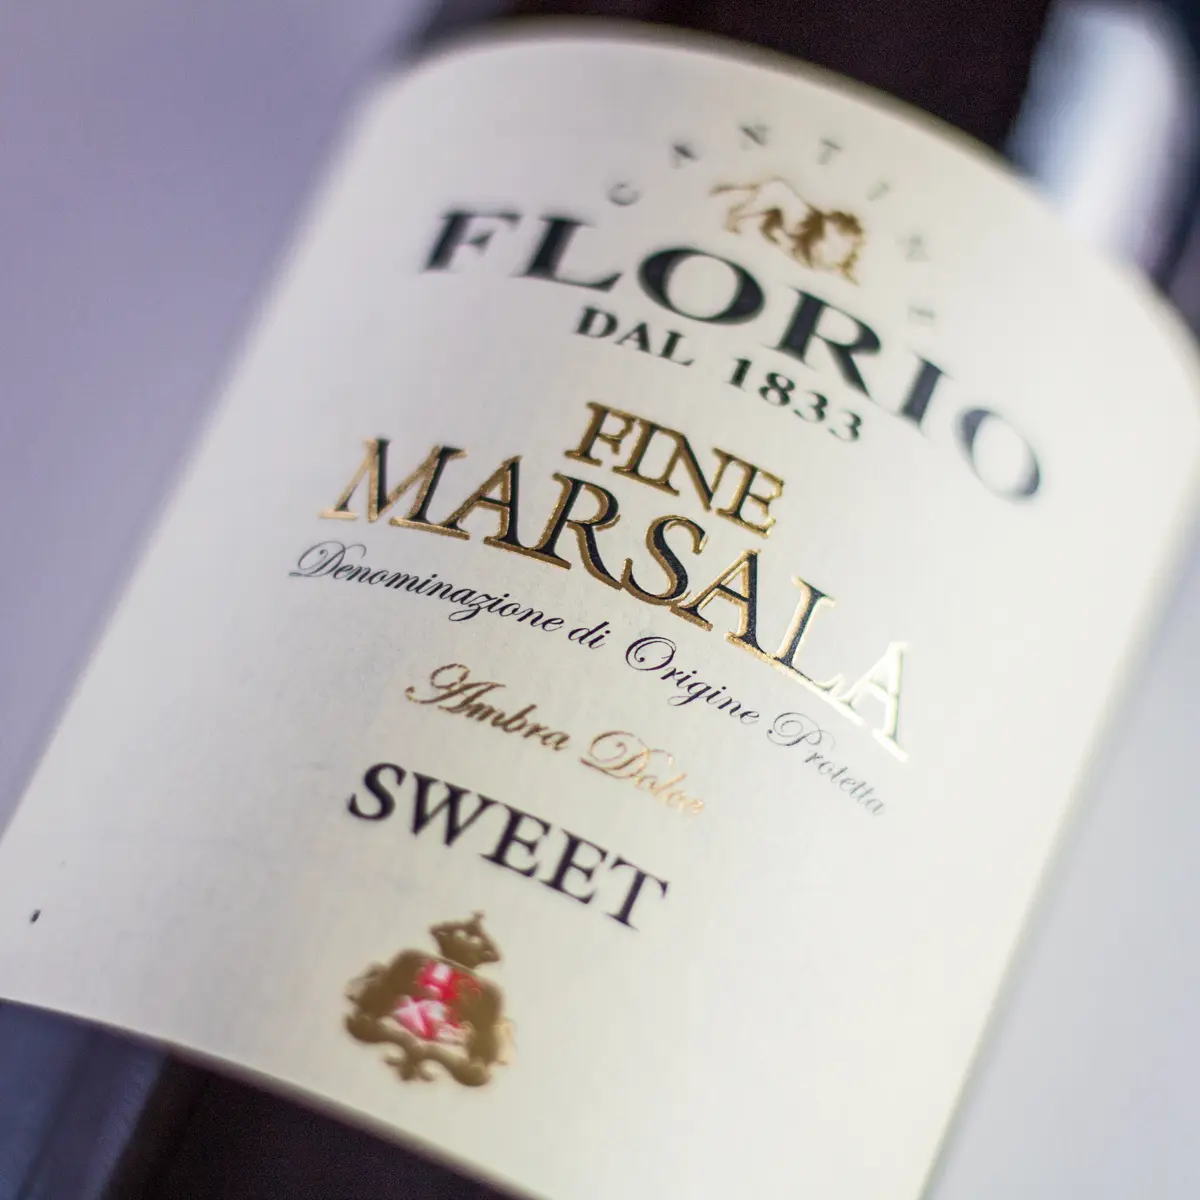 Velika četverokutna zamjenska slika Marsala Wine koja prikazuje etiketu boce.